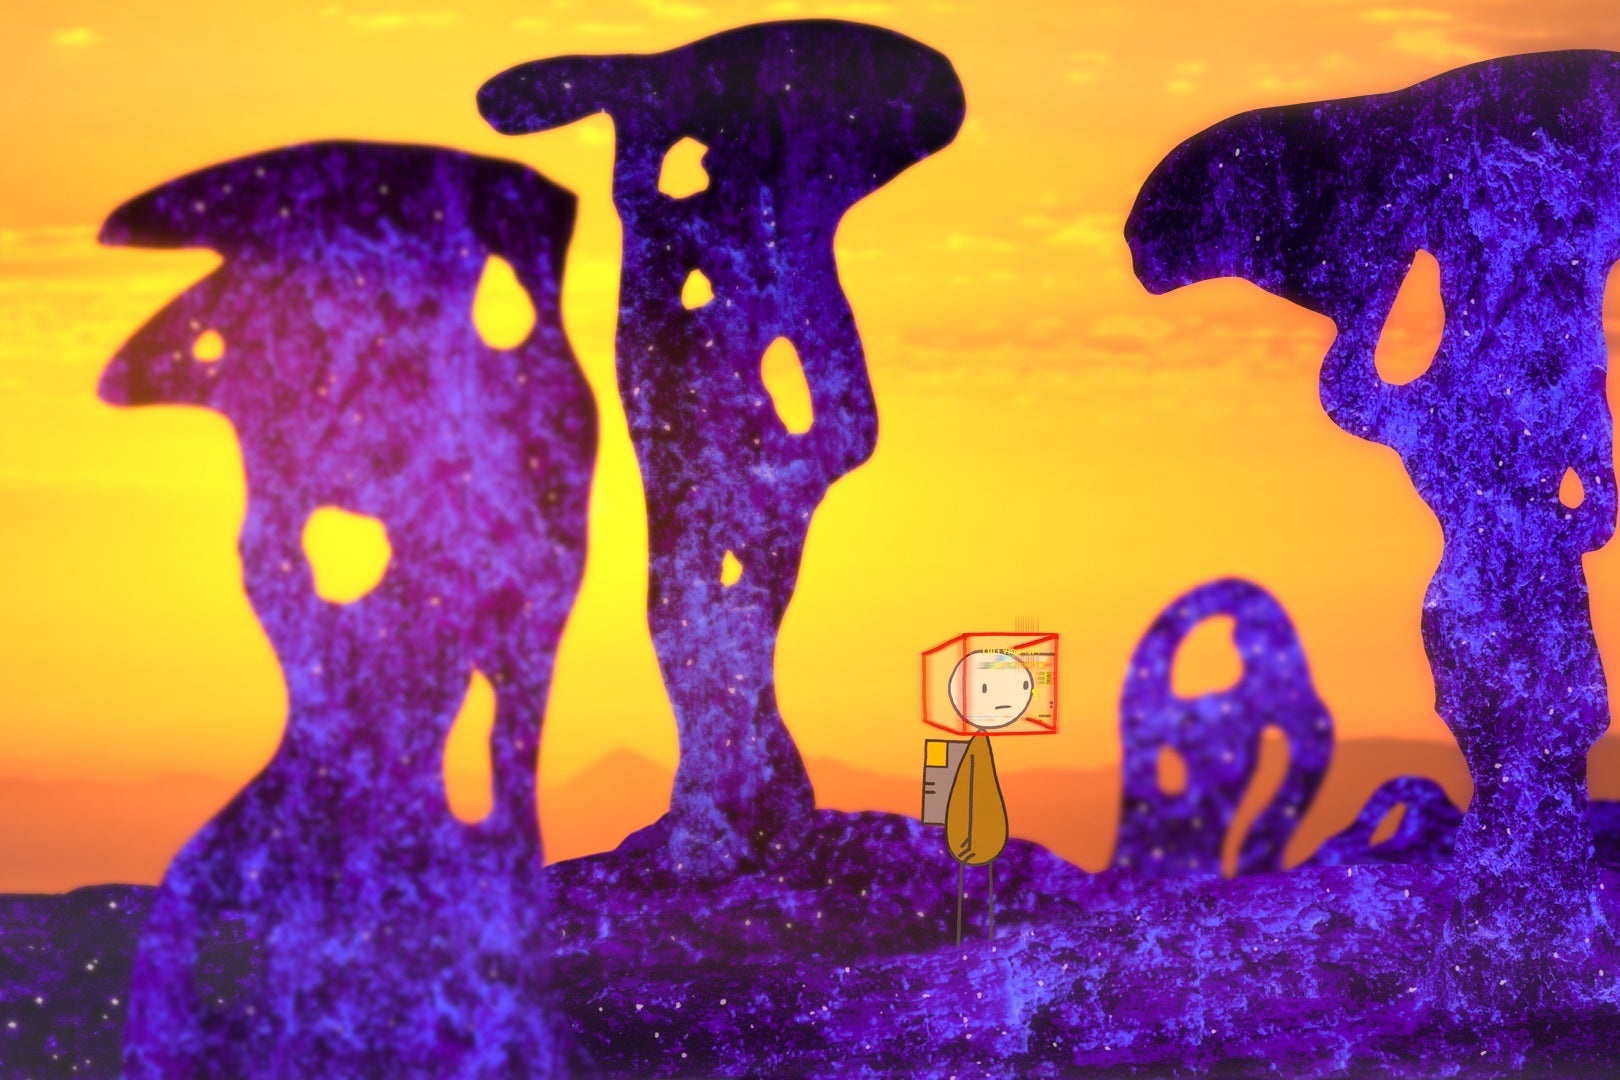 A stick figure walks through an alien landscape.